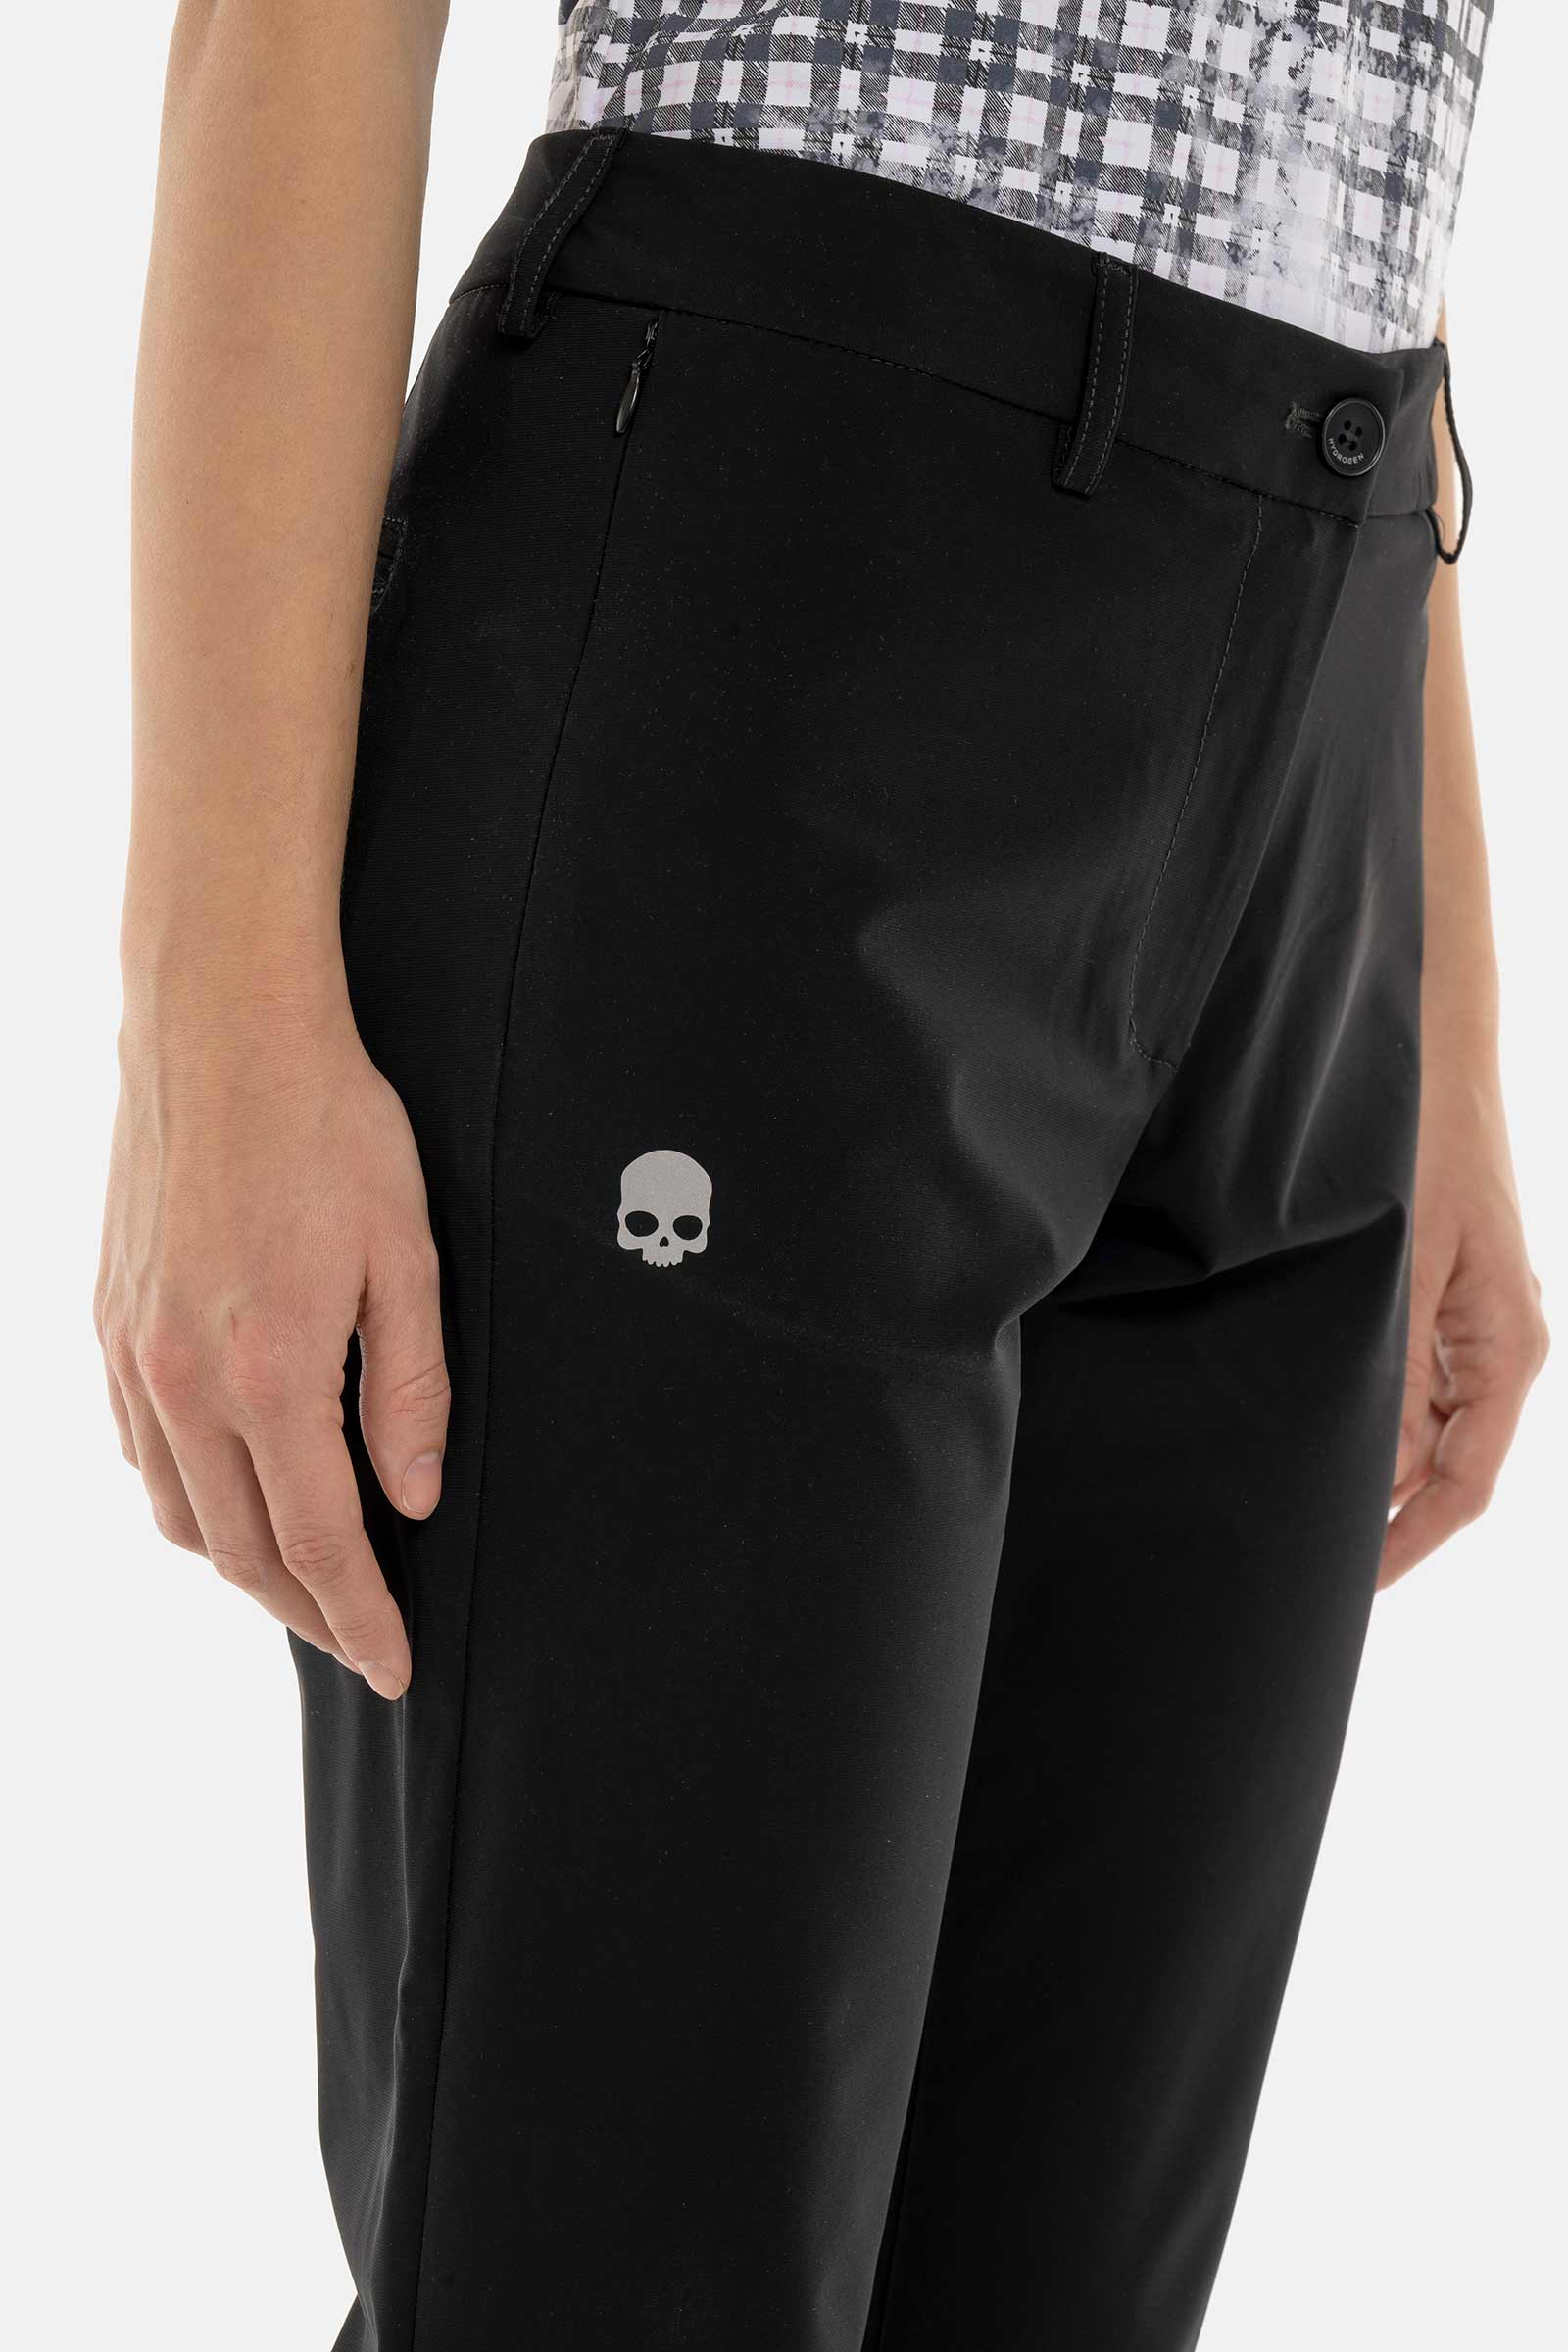 GOLF PANTS - BLACK - Hydrogen - Luxury Sportwear